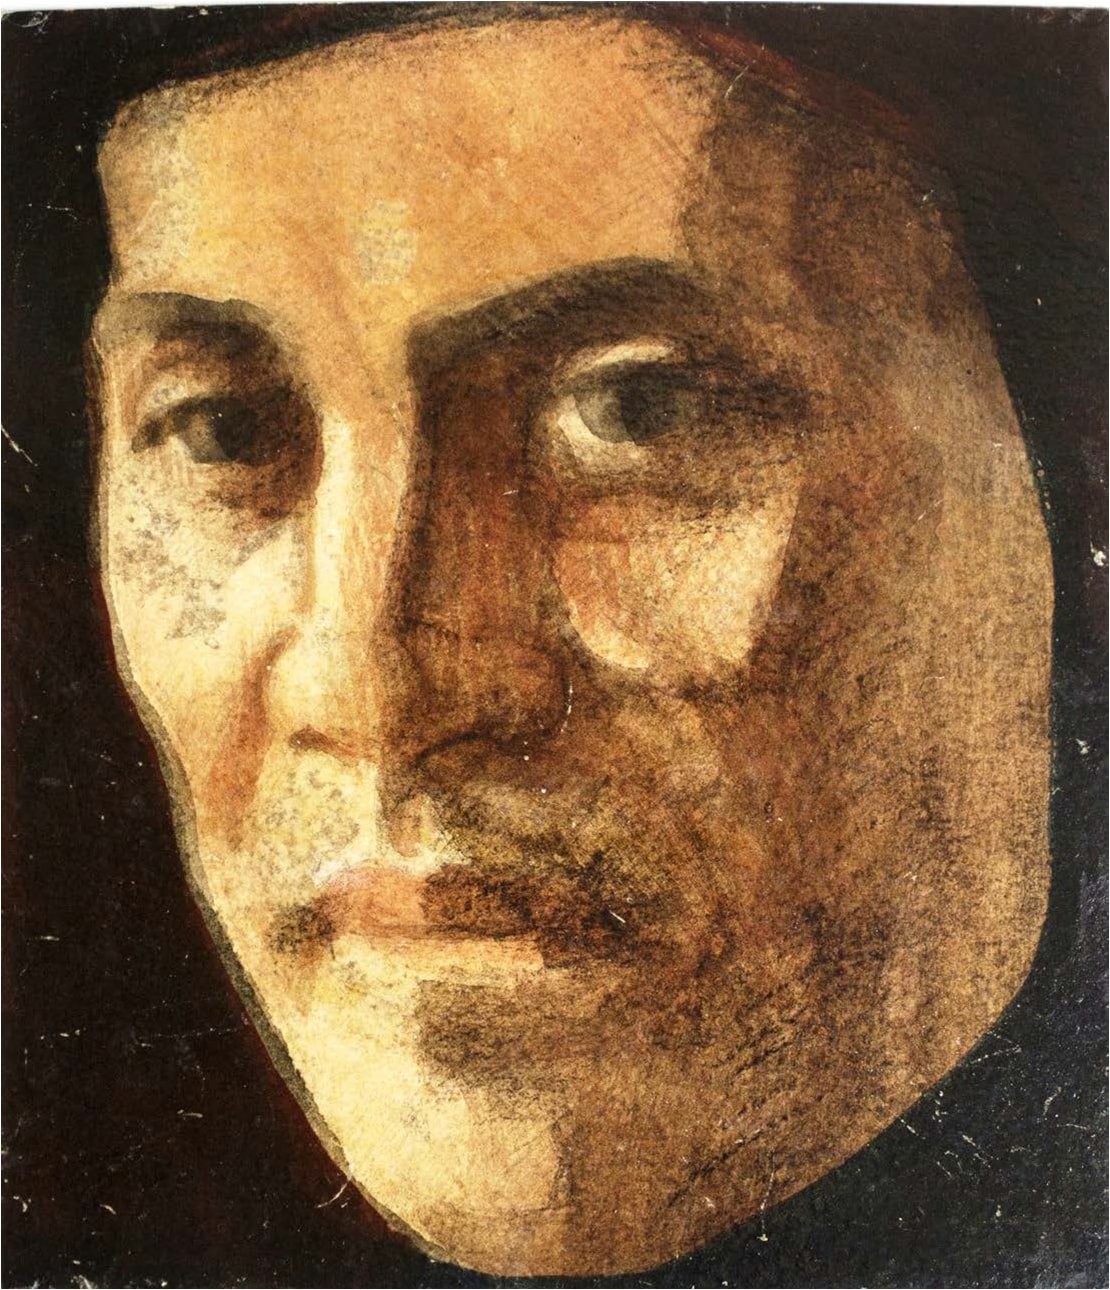  გუაში, ლაქი, მუყაო, 15X17სმ.  შალვა ამირანაშვილის სახელობის ხელოვნების სახელმწიფო მუზეუმი